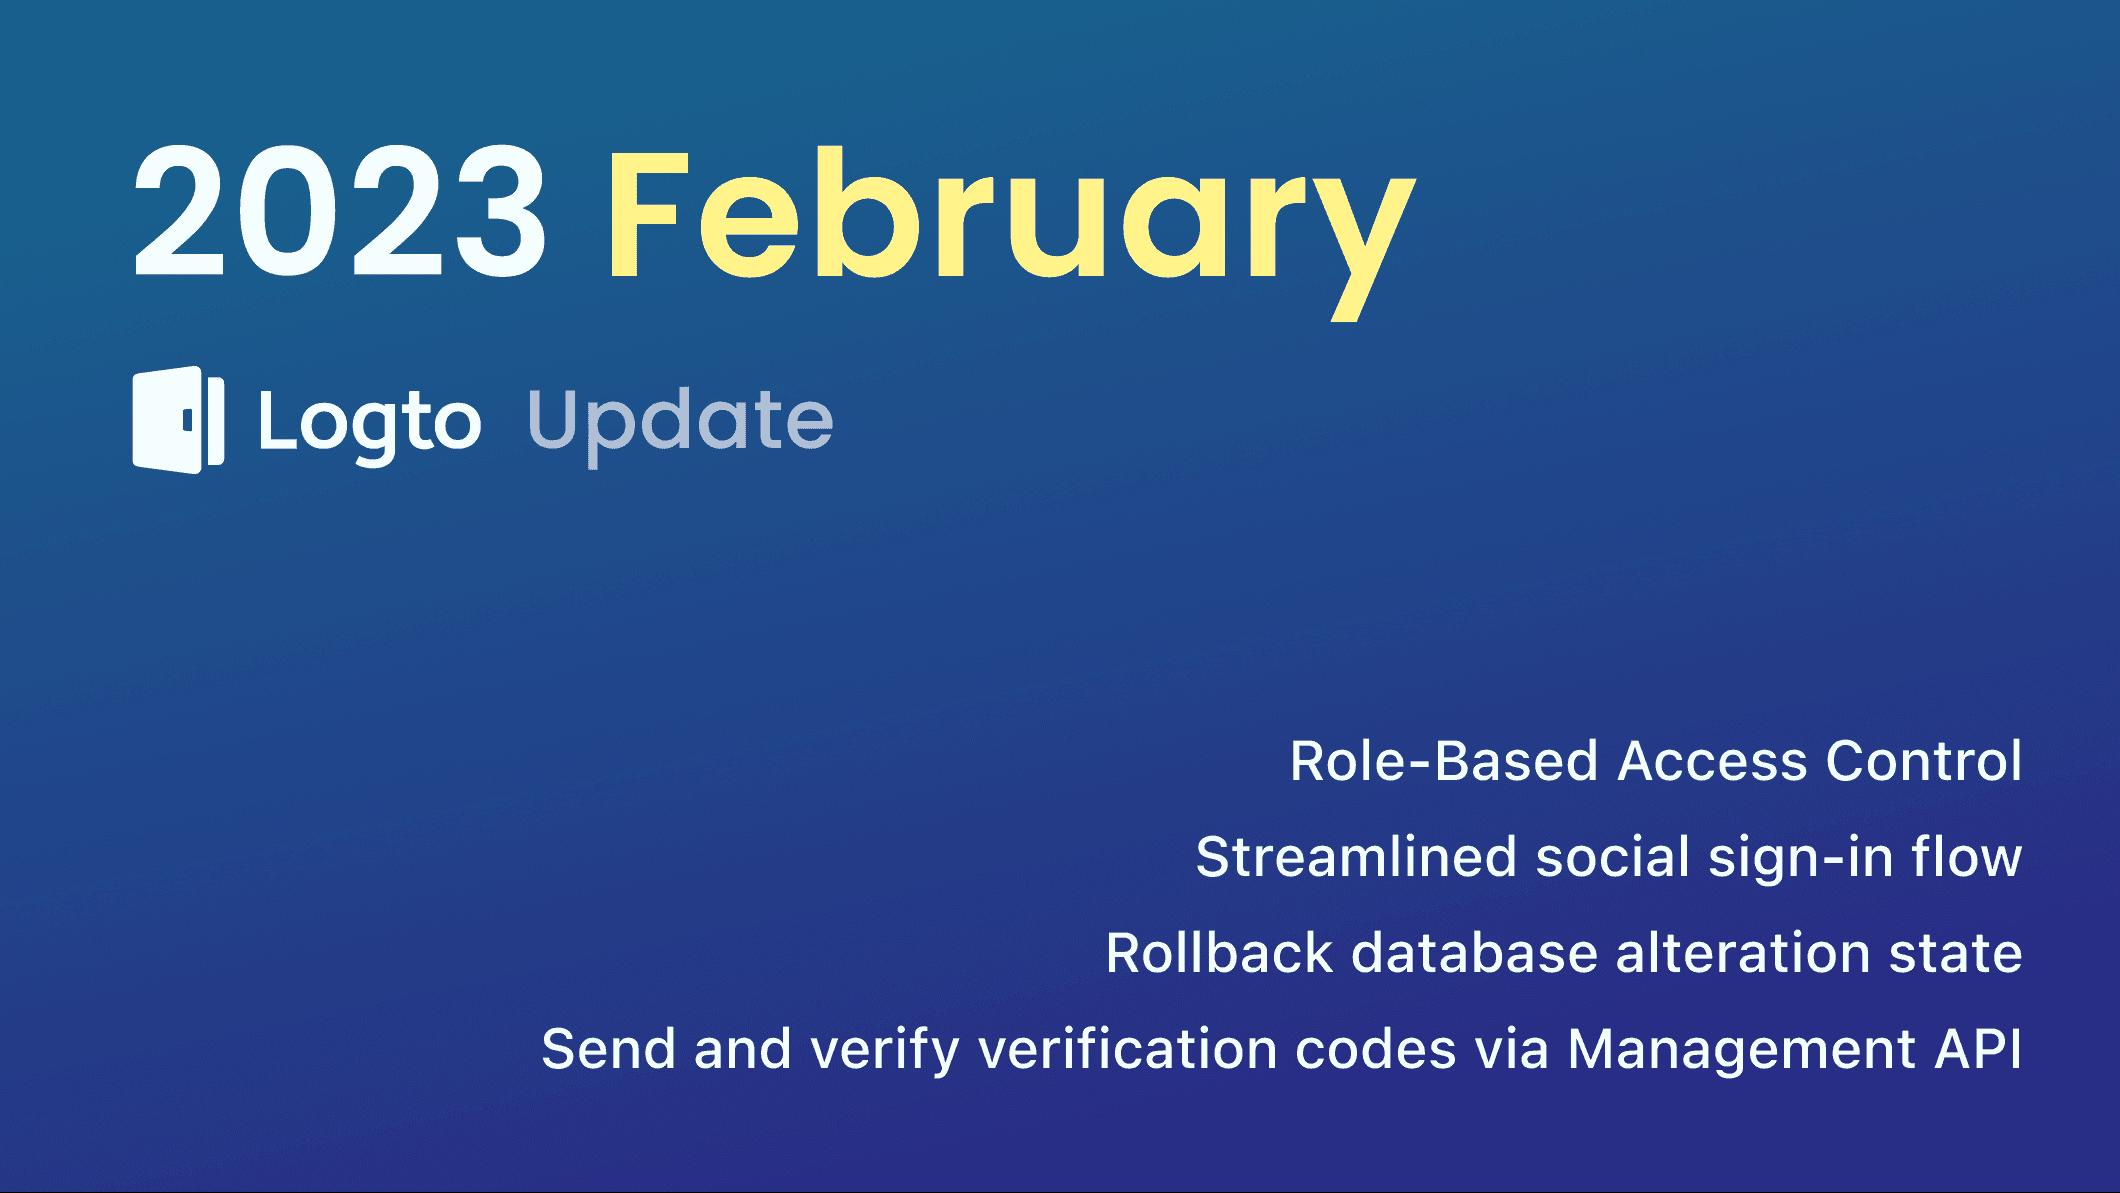 Logto 2023 February update